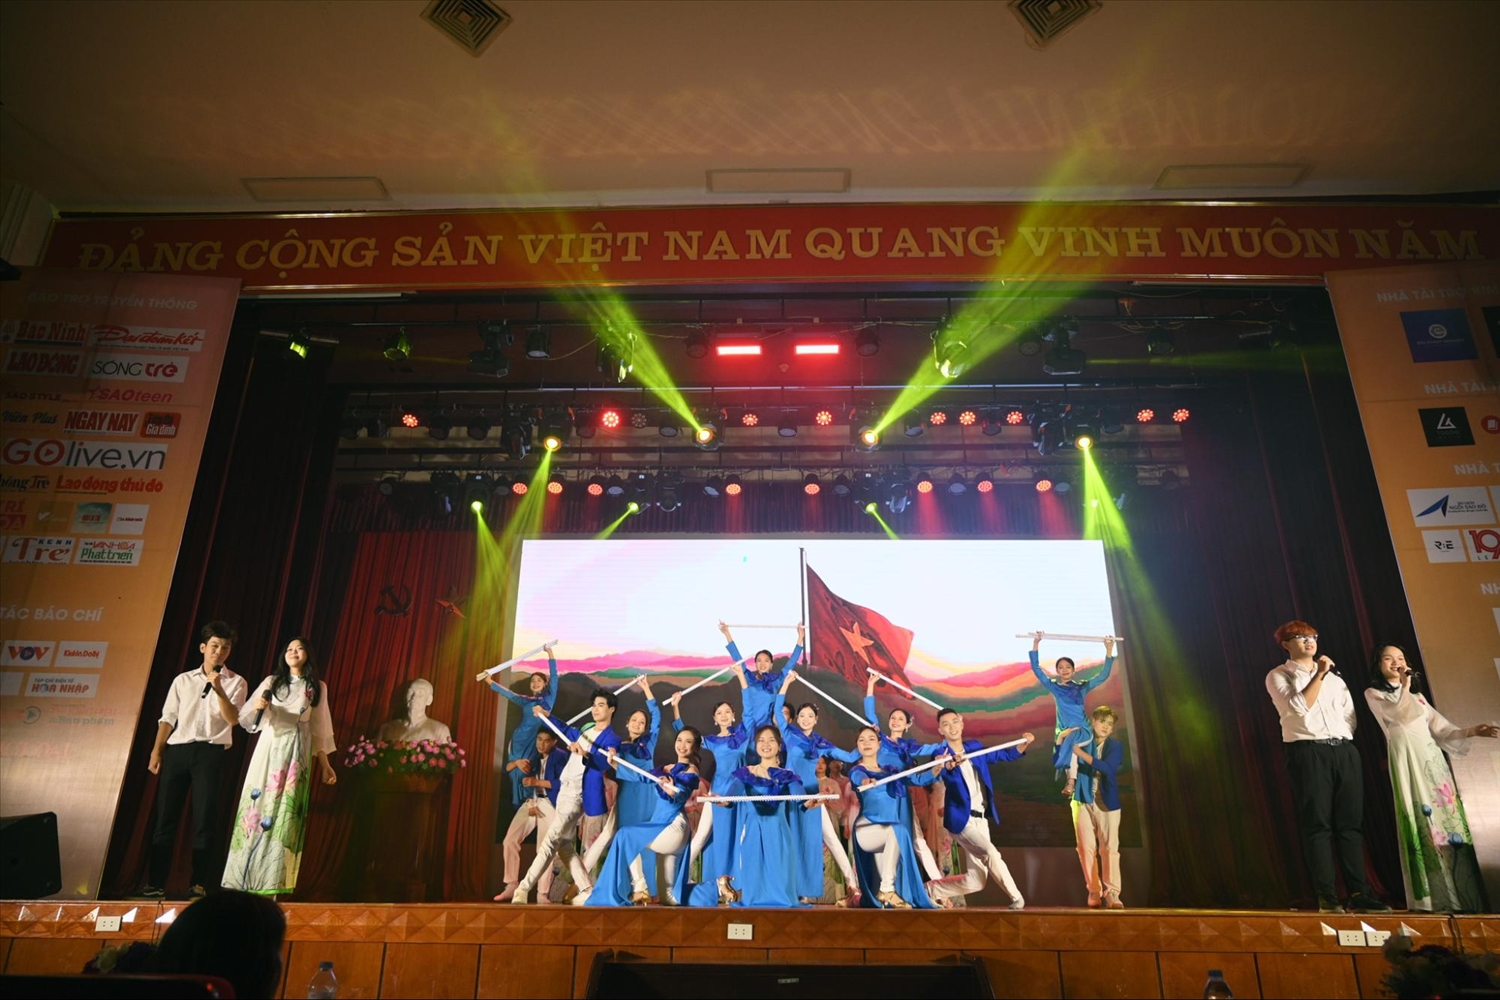 Hợp xướng “Việt Nam tử tế” mang đến một không khí hào hùng.